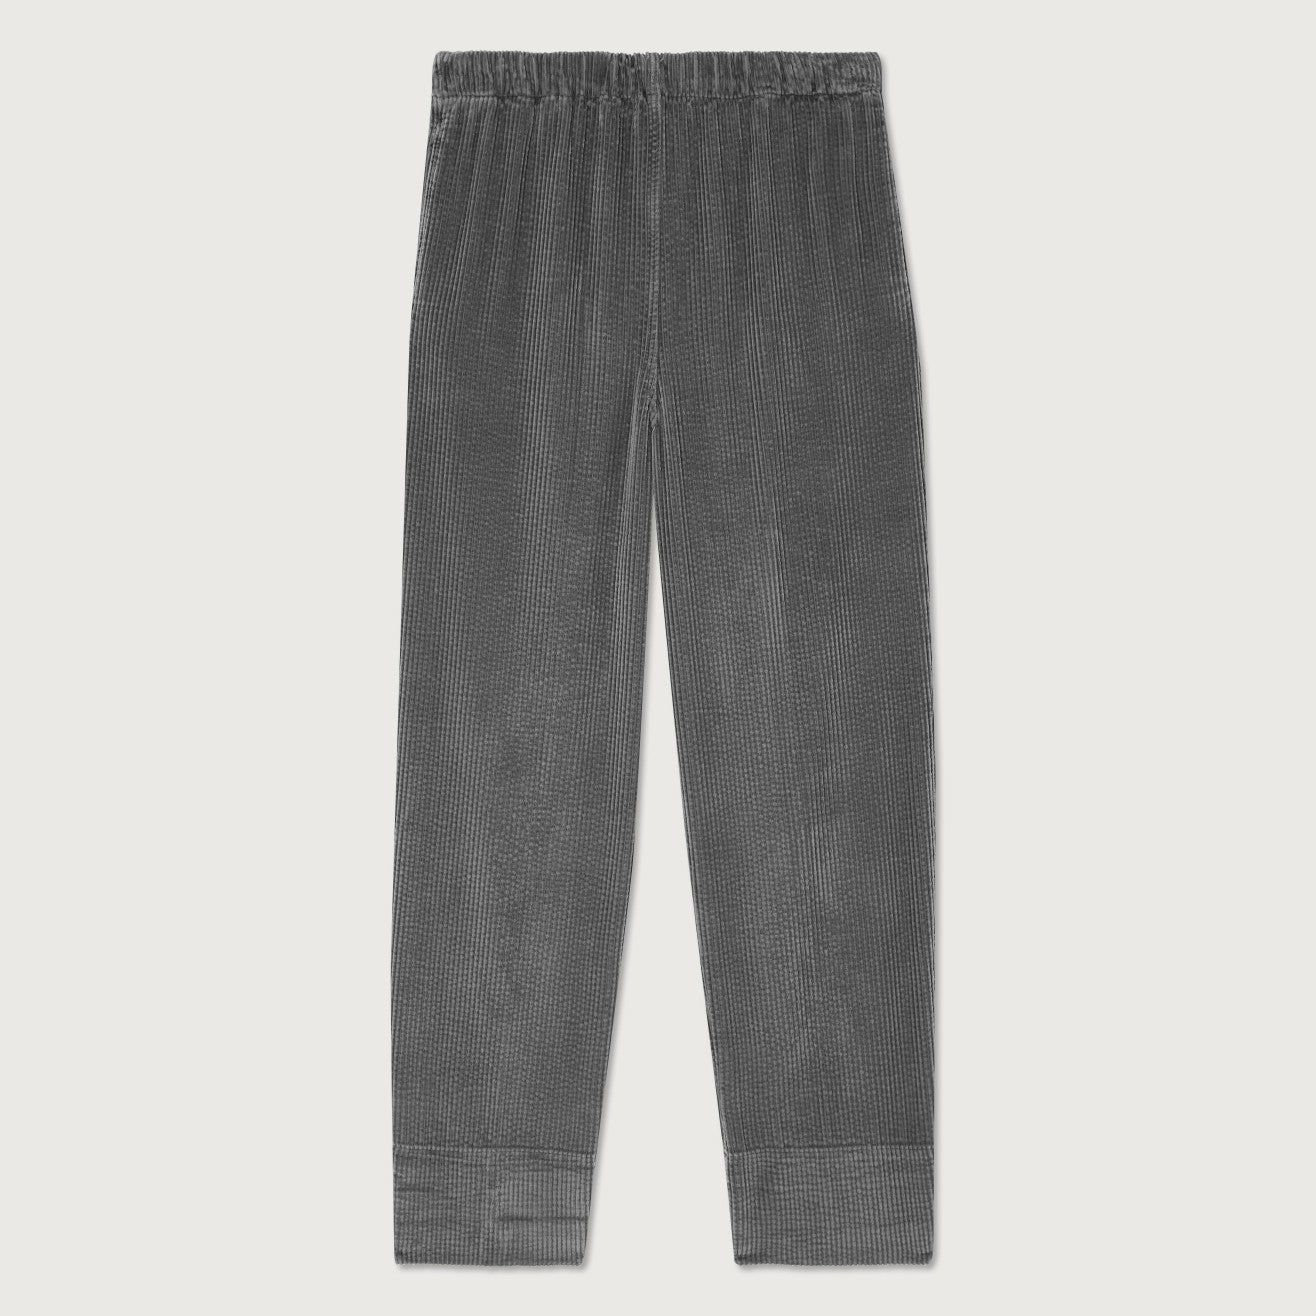 Padow Trousers - Carbone Vintage